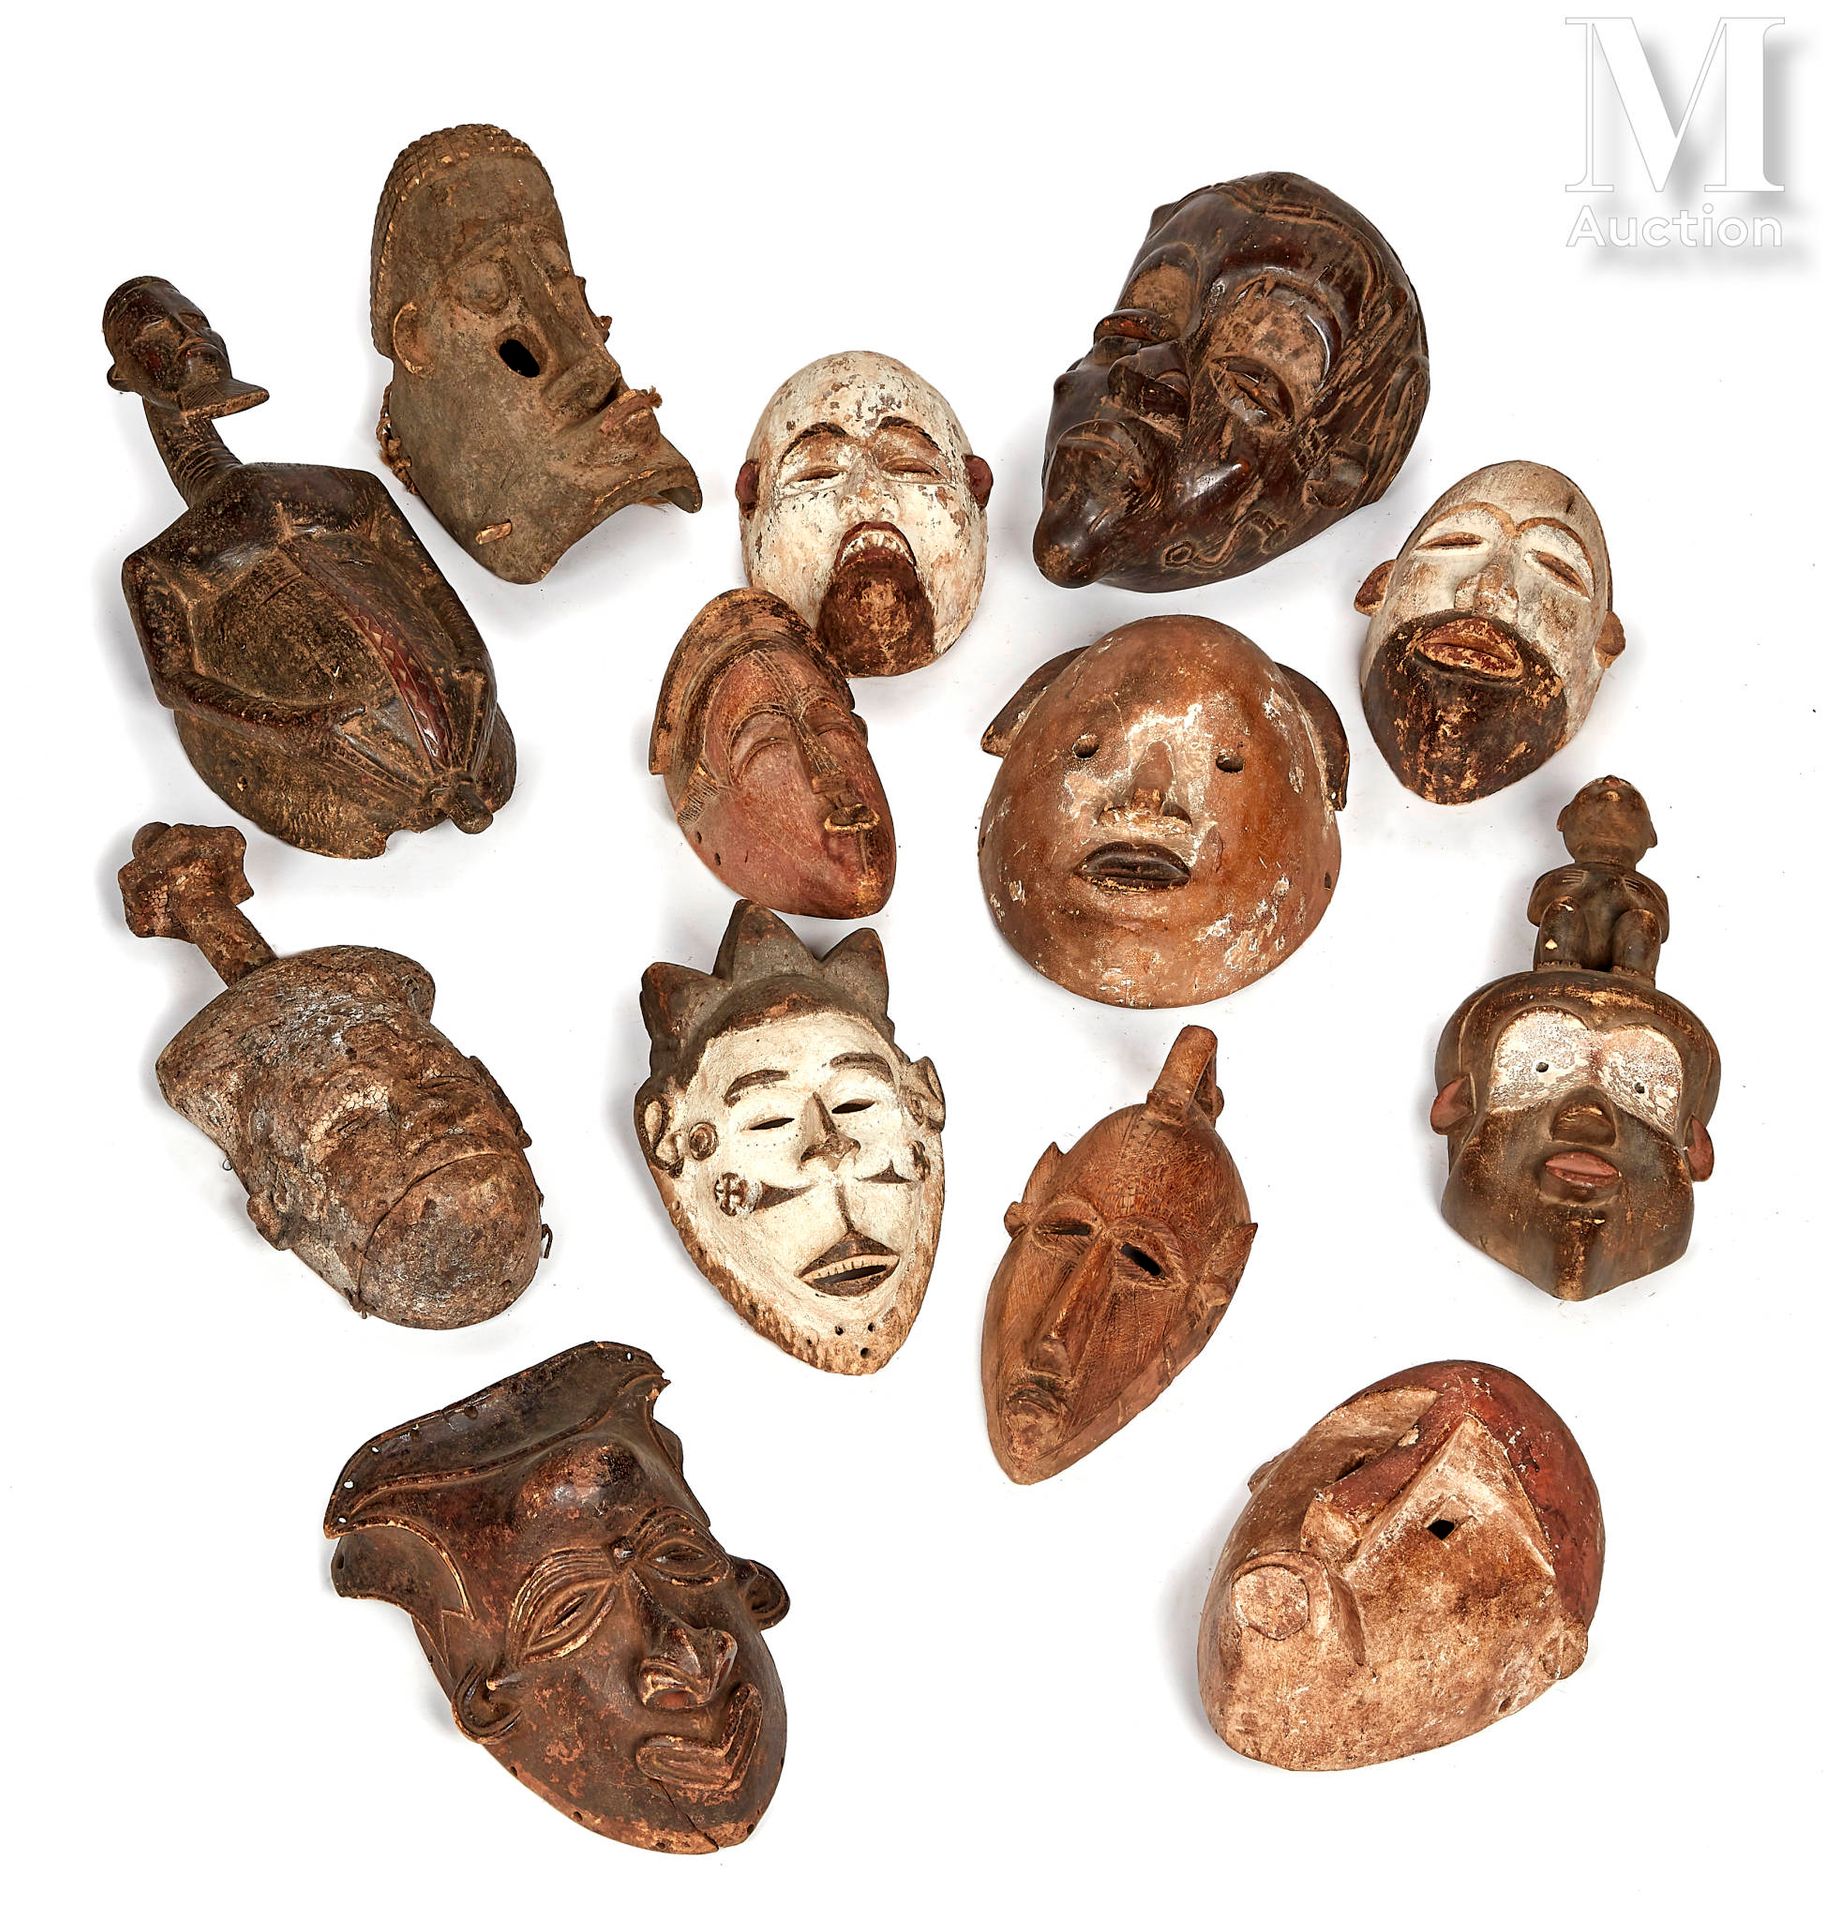 14 masques en bois
dans le style de l'Afrique ancestrale